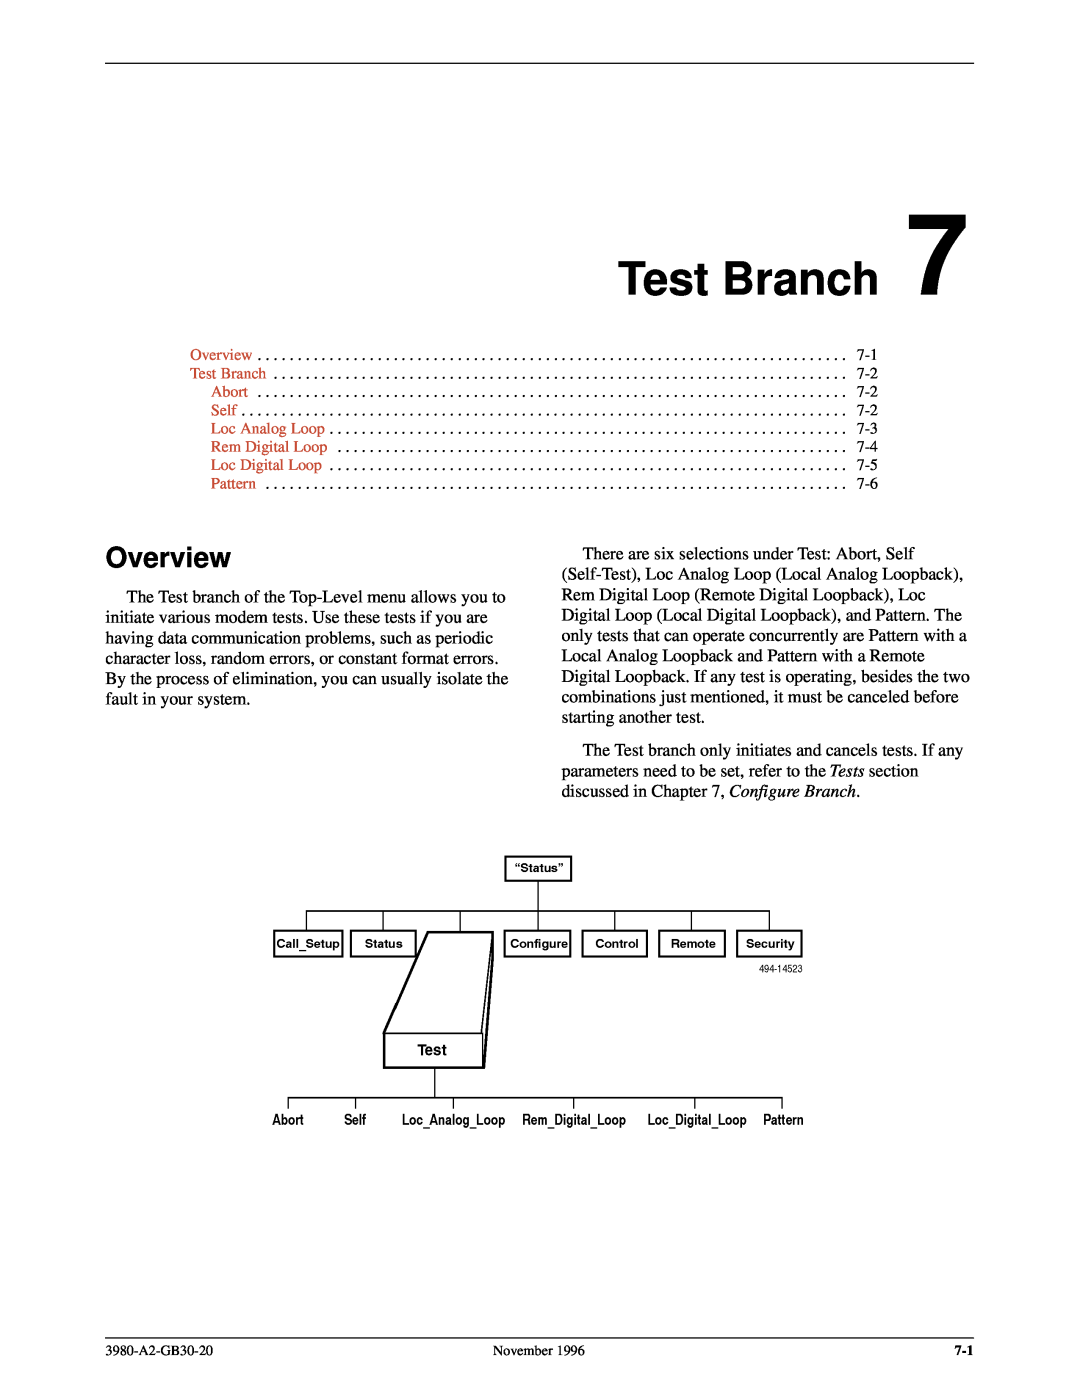 Paradyne 3800PLUS manual Overview Test Branch Abort Self Loc Analog Loop Rem Digital Loop, Loc Digital Loop Pattern 